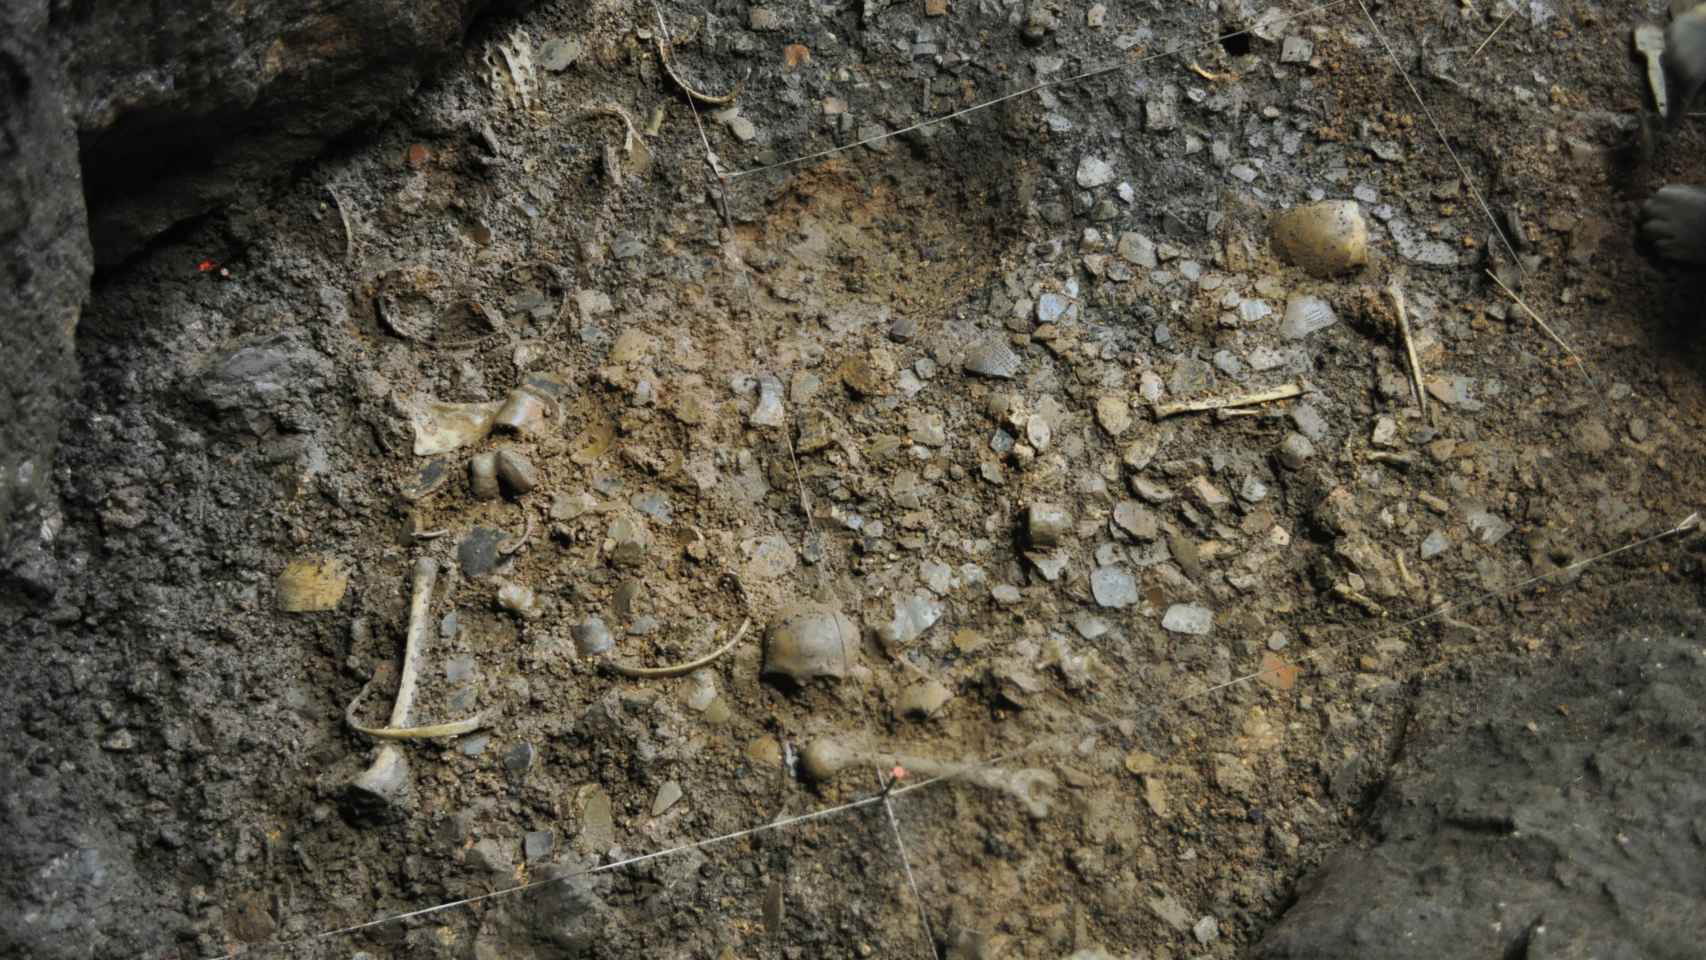 Hallazgos arqueológicos descubiertos en el yacimiento de la cueva de Els Trocs